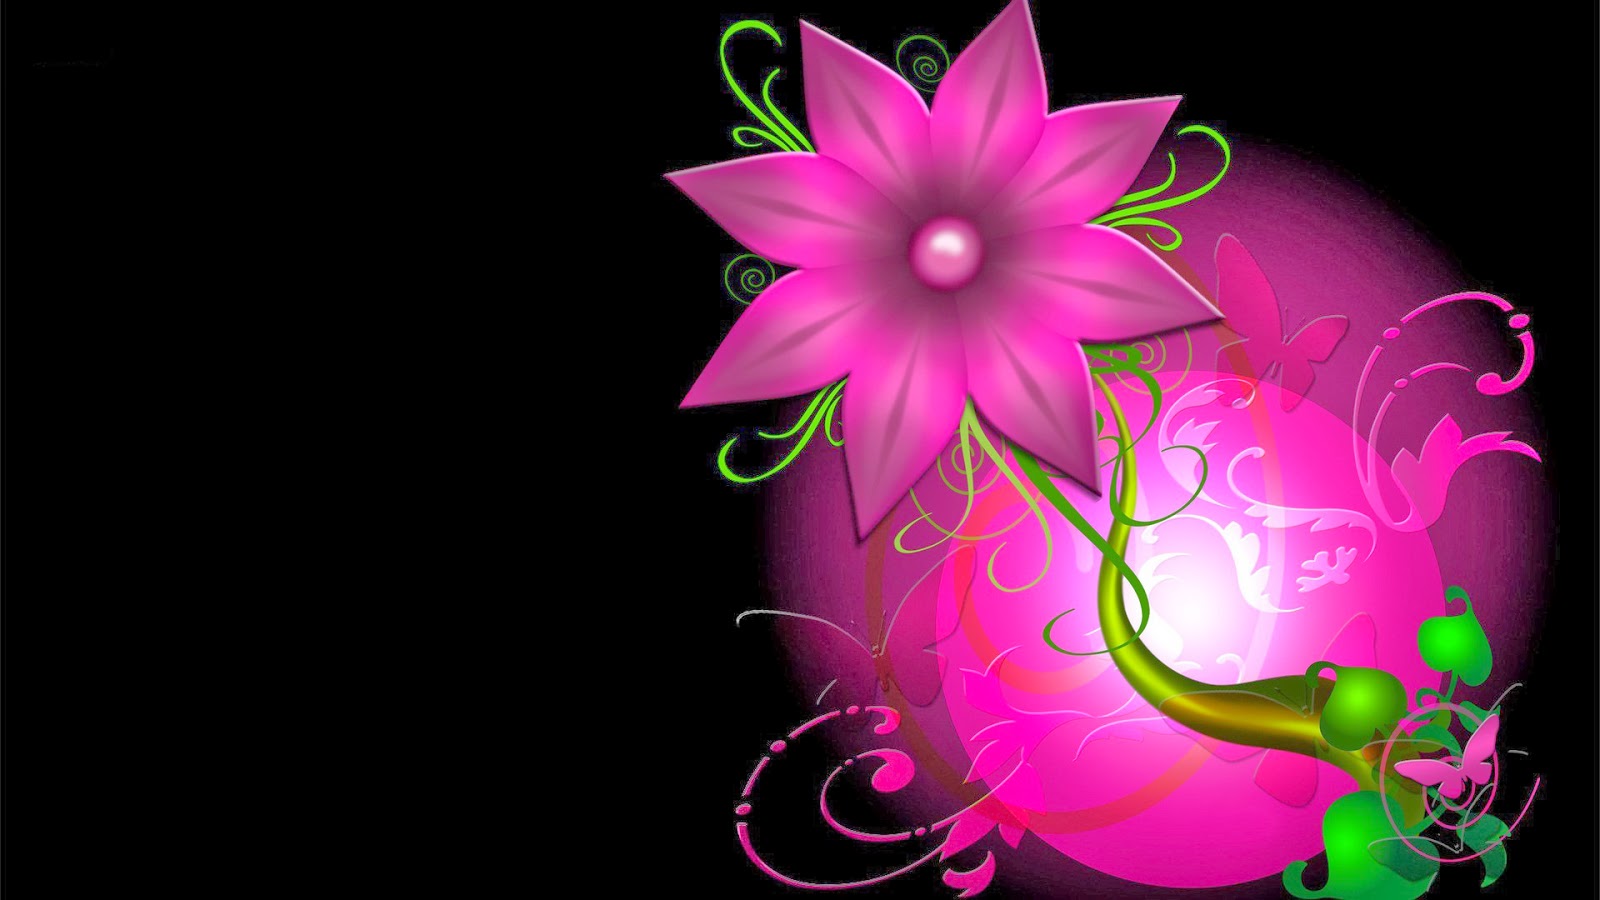 sfondi fiore hd 1080p,rosa,viola,viola,disegno grafico,pianta